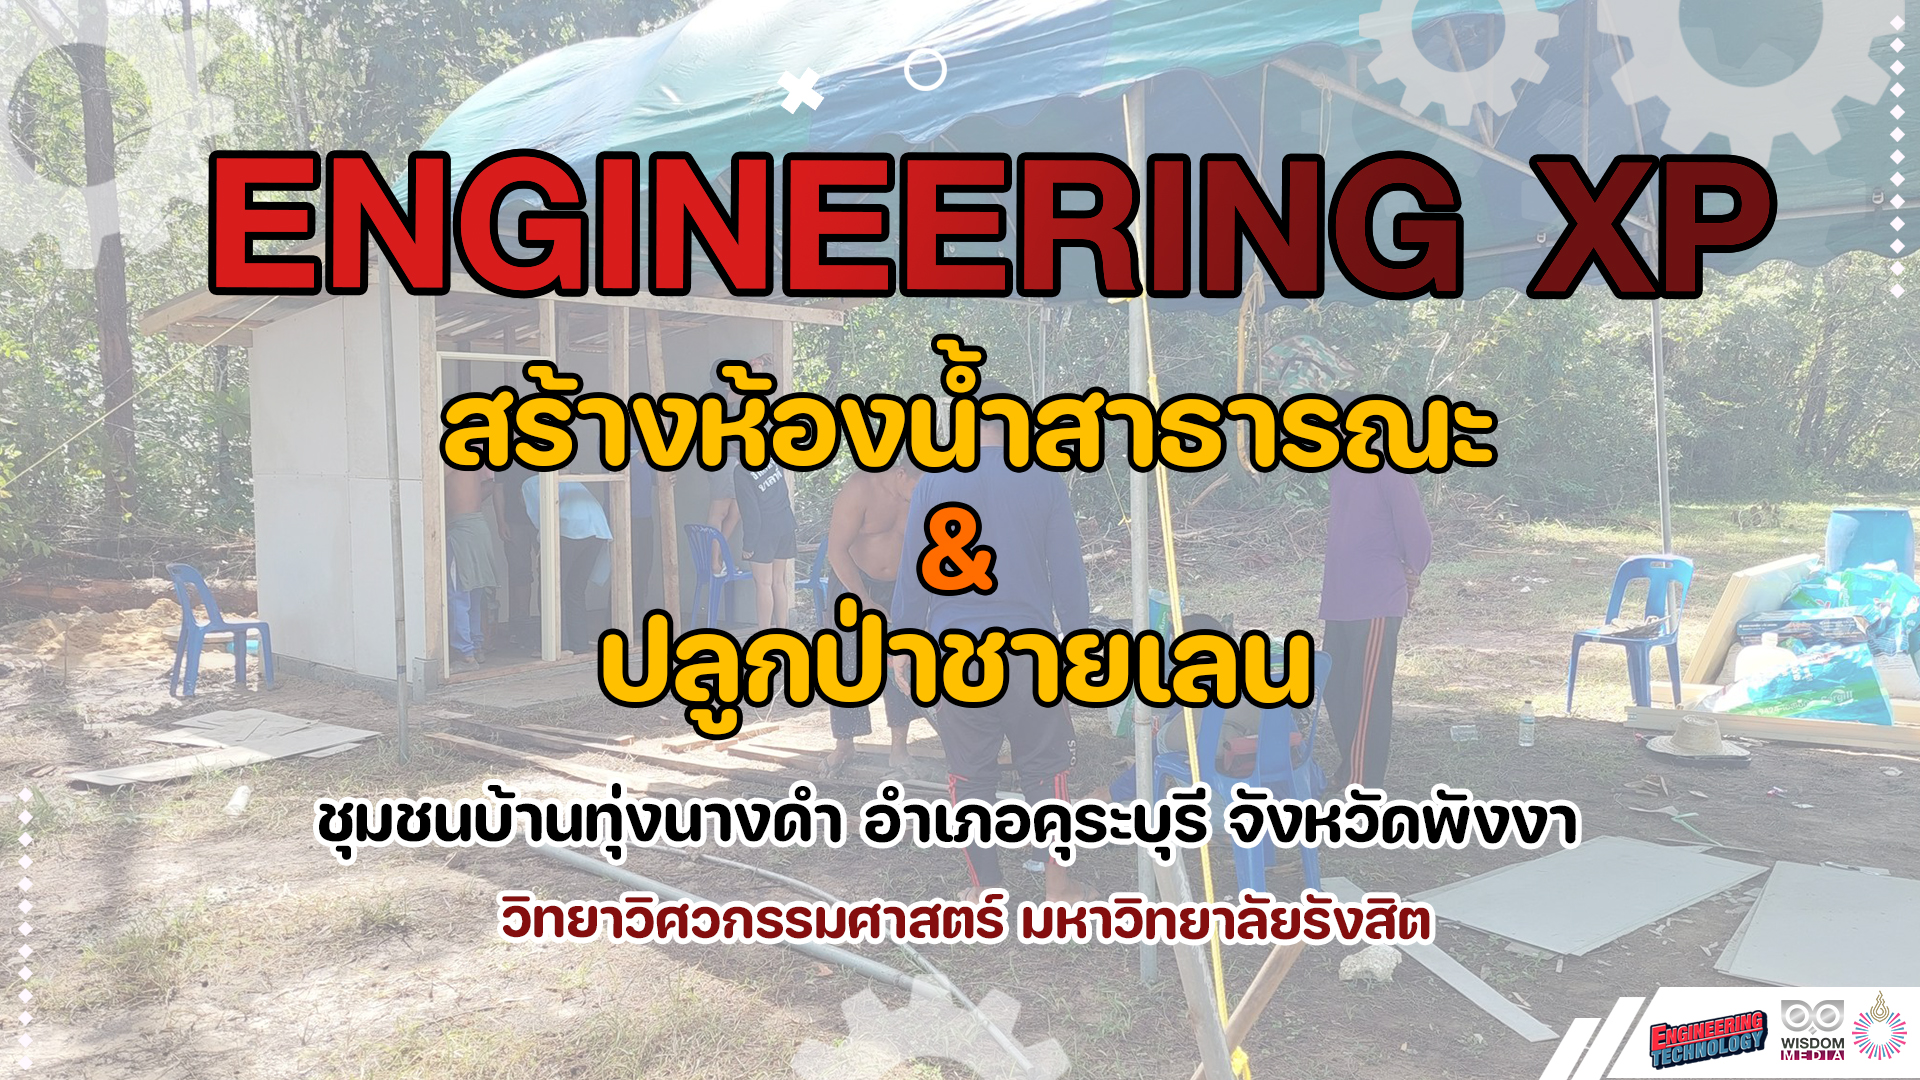 Engineering XP | ‘ค่ายอาสา’ สร้างห้องน้ำสาธารณะ และปลูกป่าชายเลน ชุมชนทุ่งนางดำ อ.คุระบุรี จ.พังงา